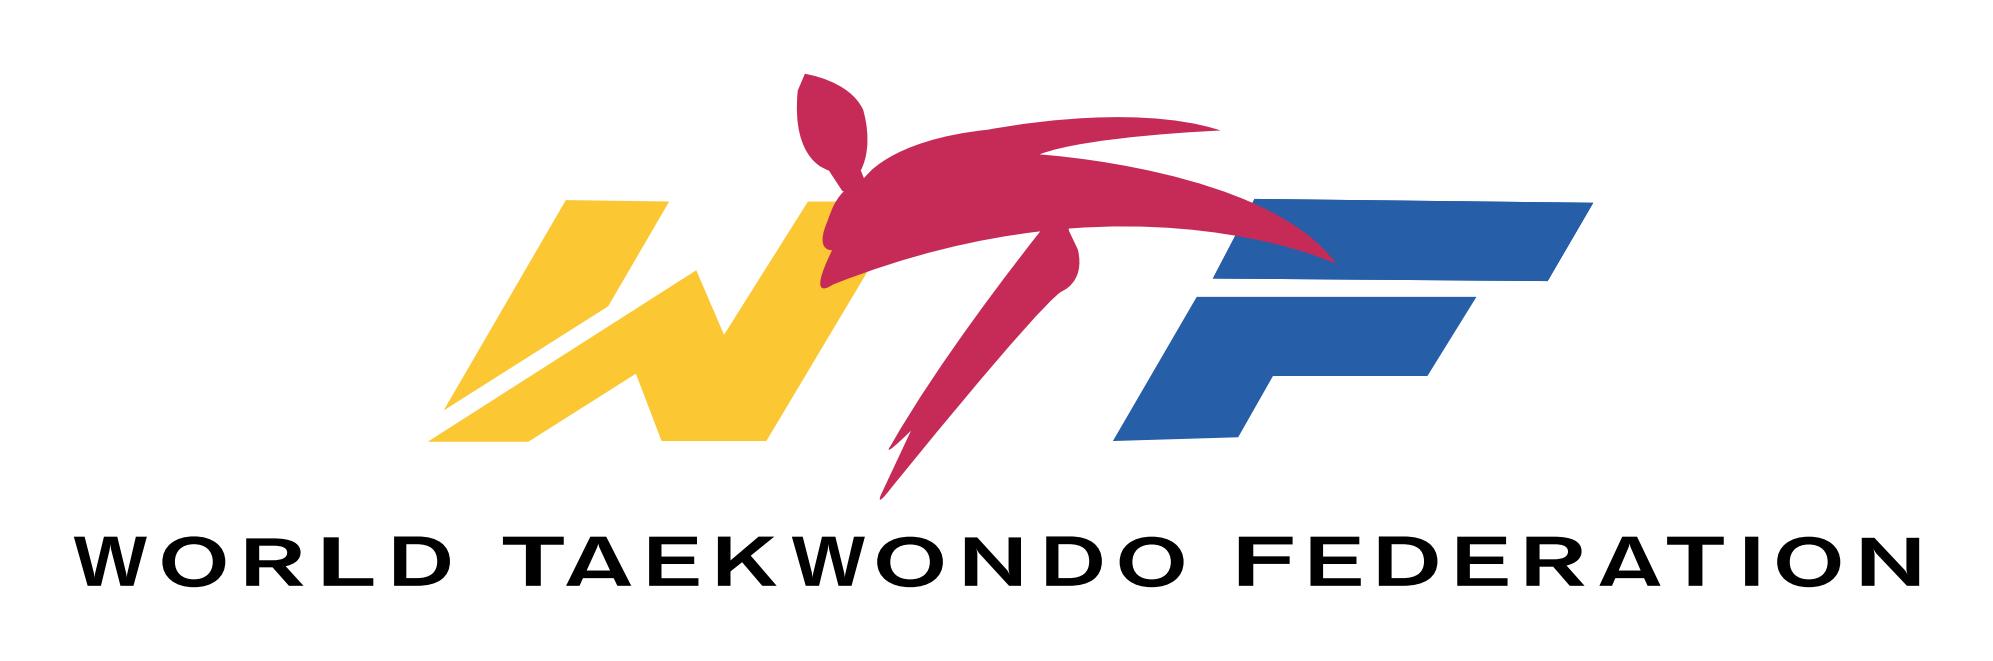 wtf-world taekwondo federation logo